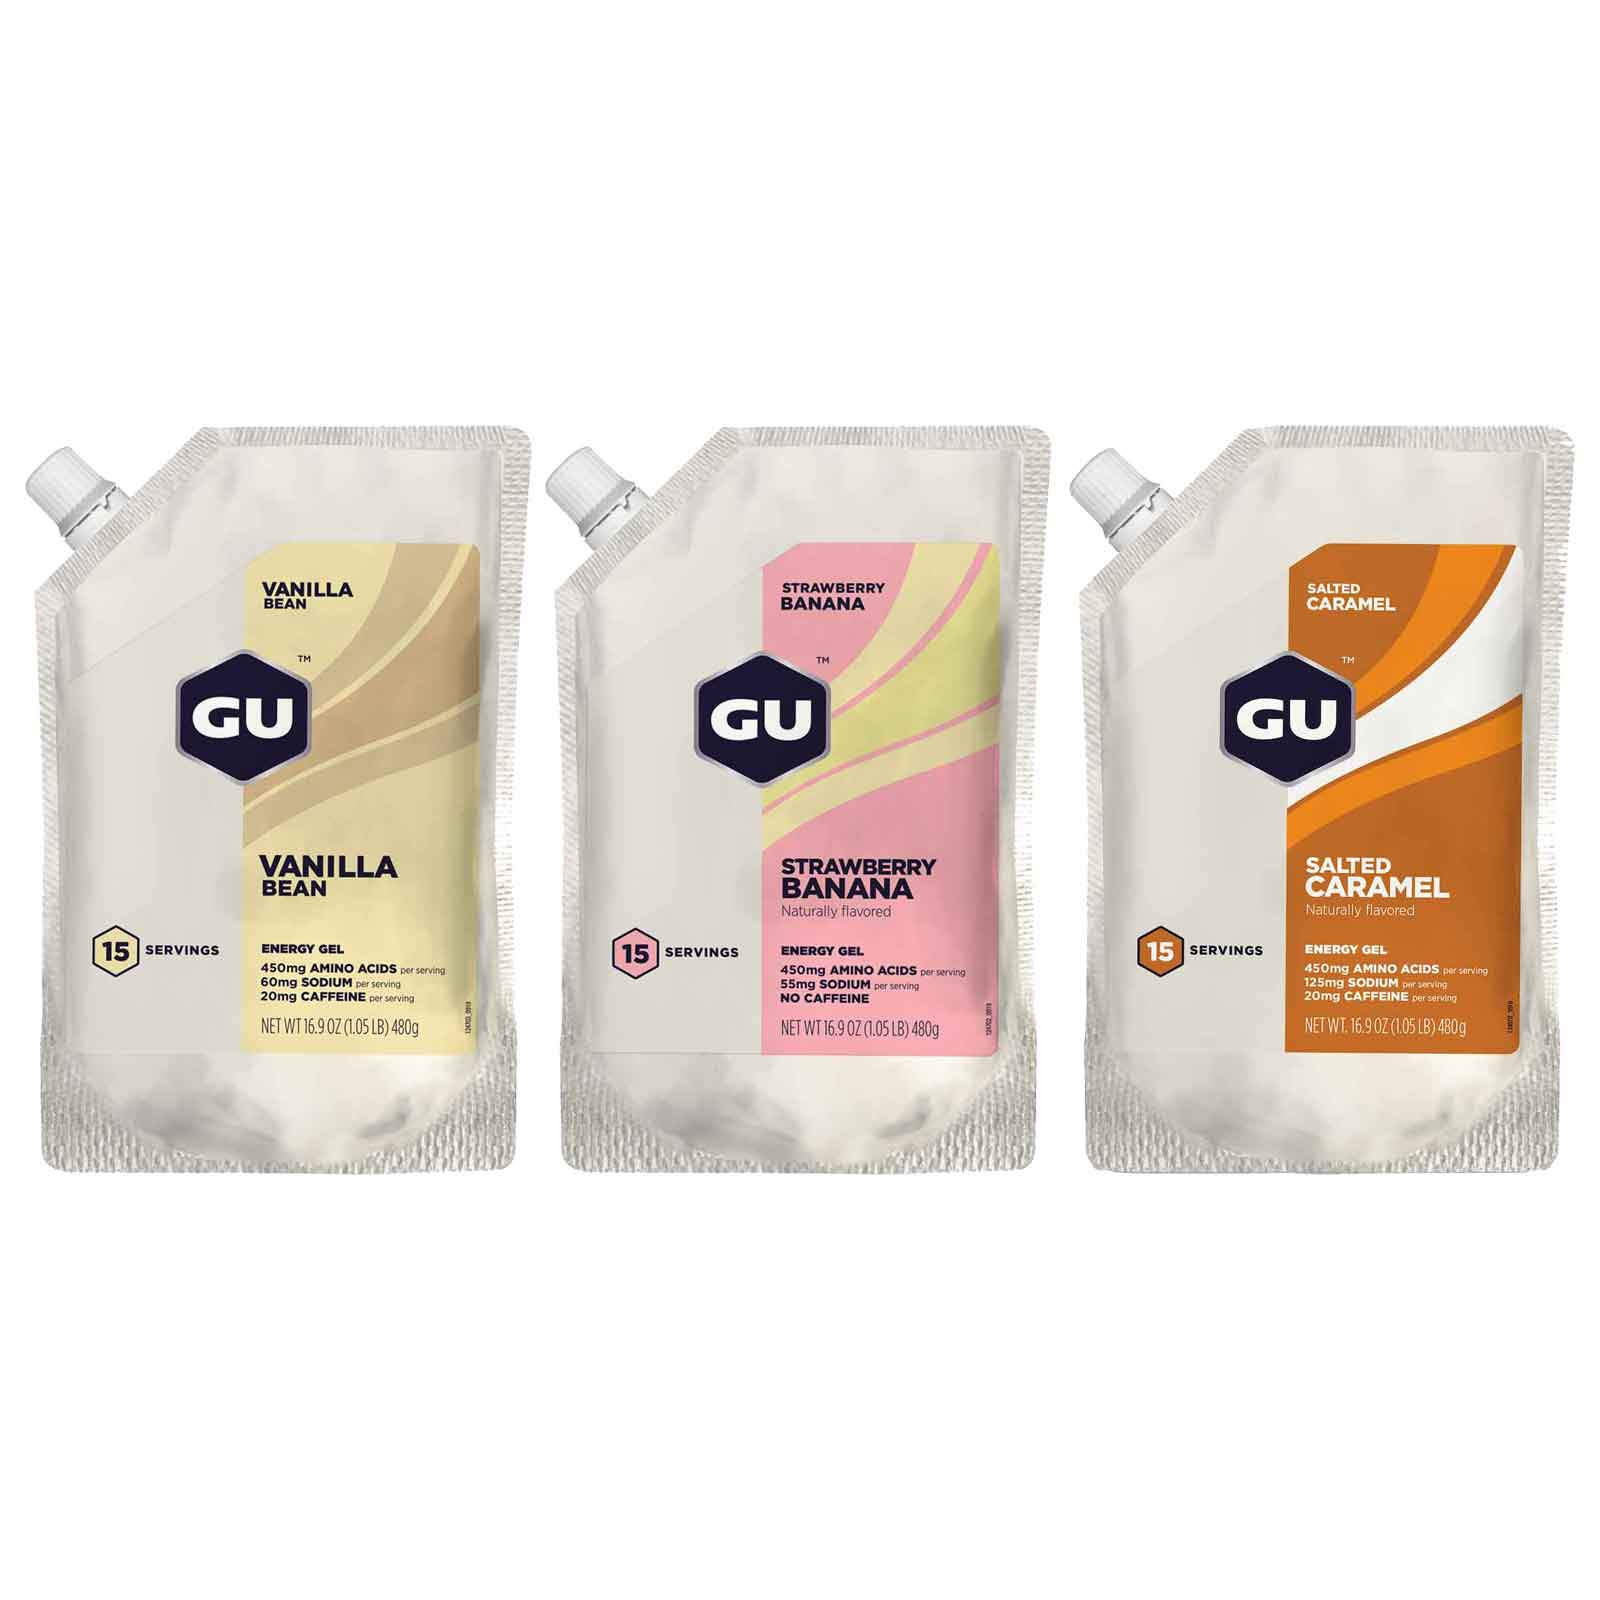 Produktbild von GU Energy Gel 15 Serving - Kohlenhydrrat-Gel - 480g